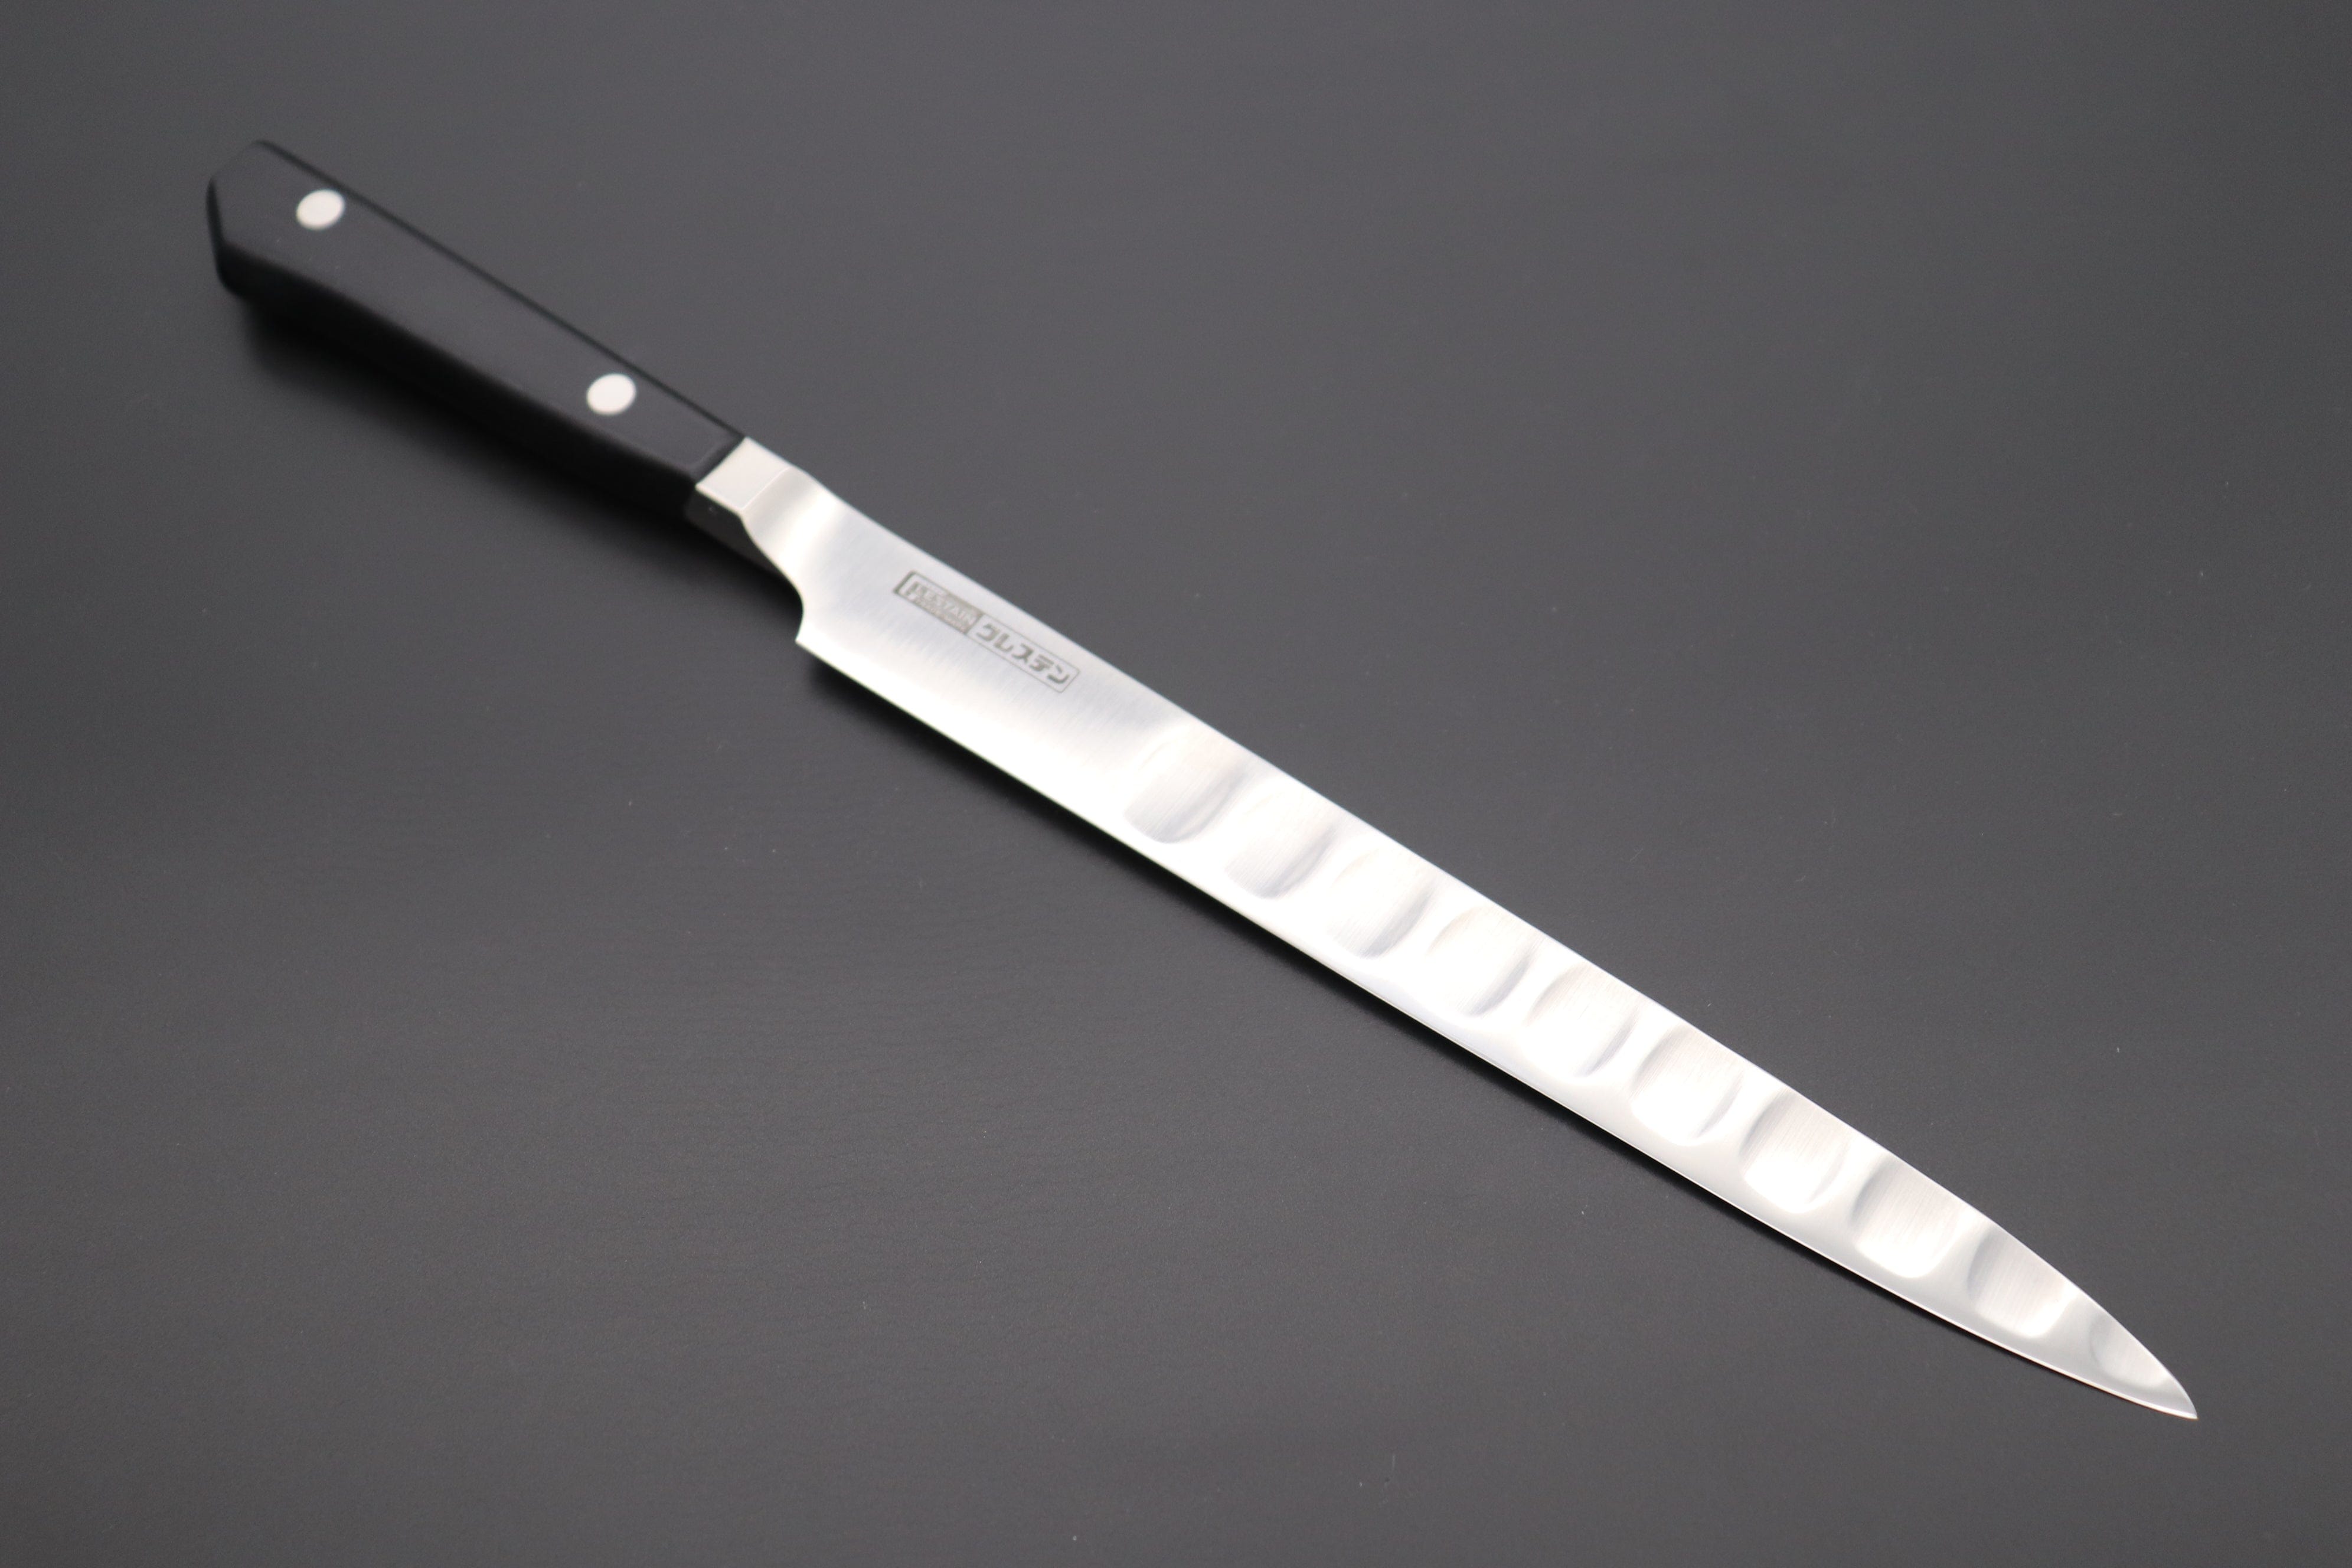 https://japanesechefsknife.com/cdn/shop/files/glestain-fillet-knife-glestain-fillet-knife-210mm-and-250mm-2-sizes-flexible-blade-42931133448475.jpg?v=1695784895